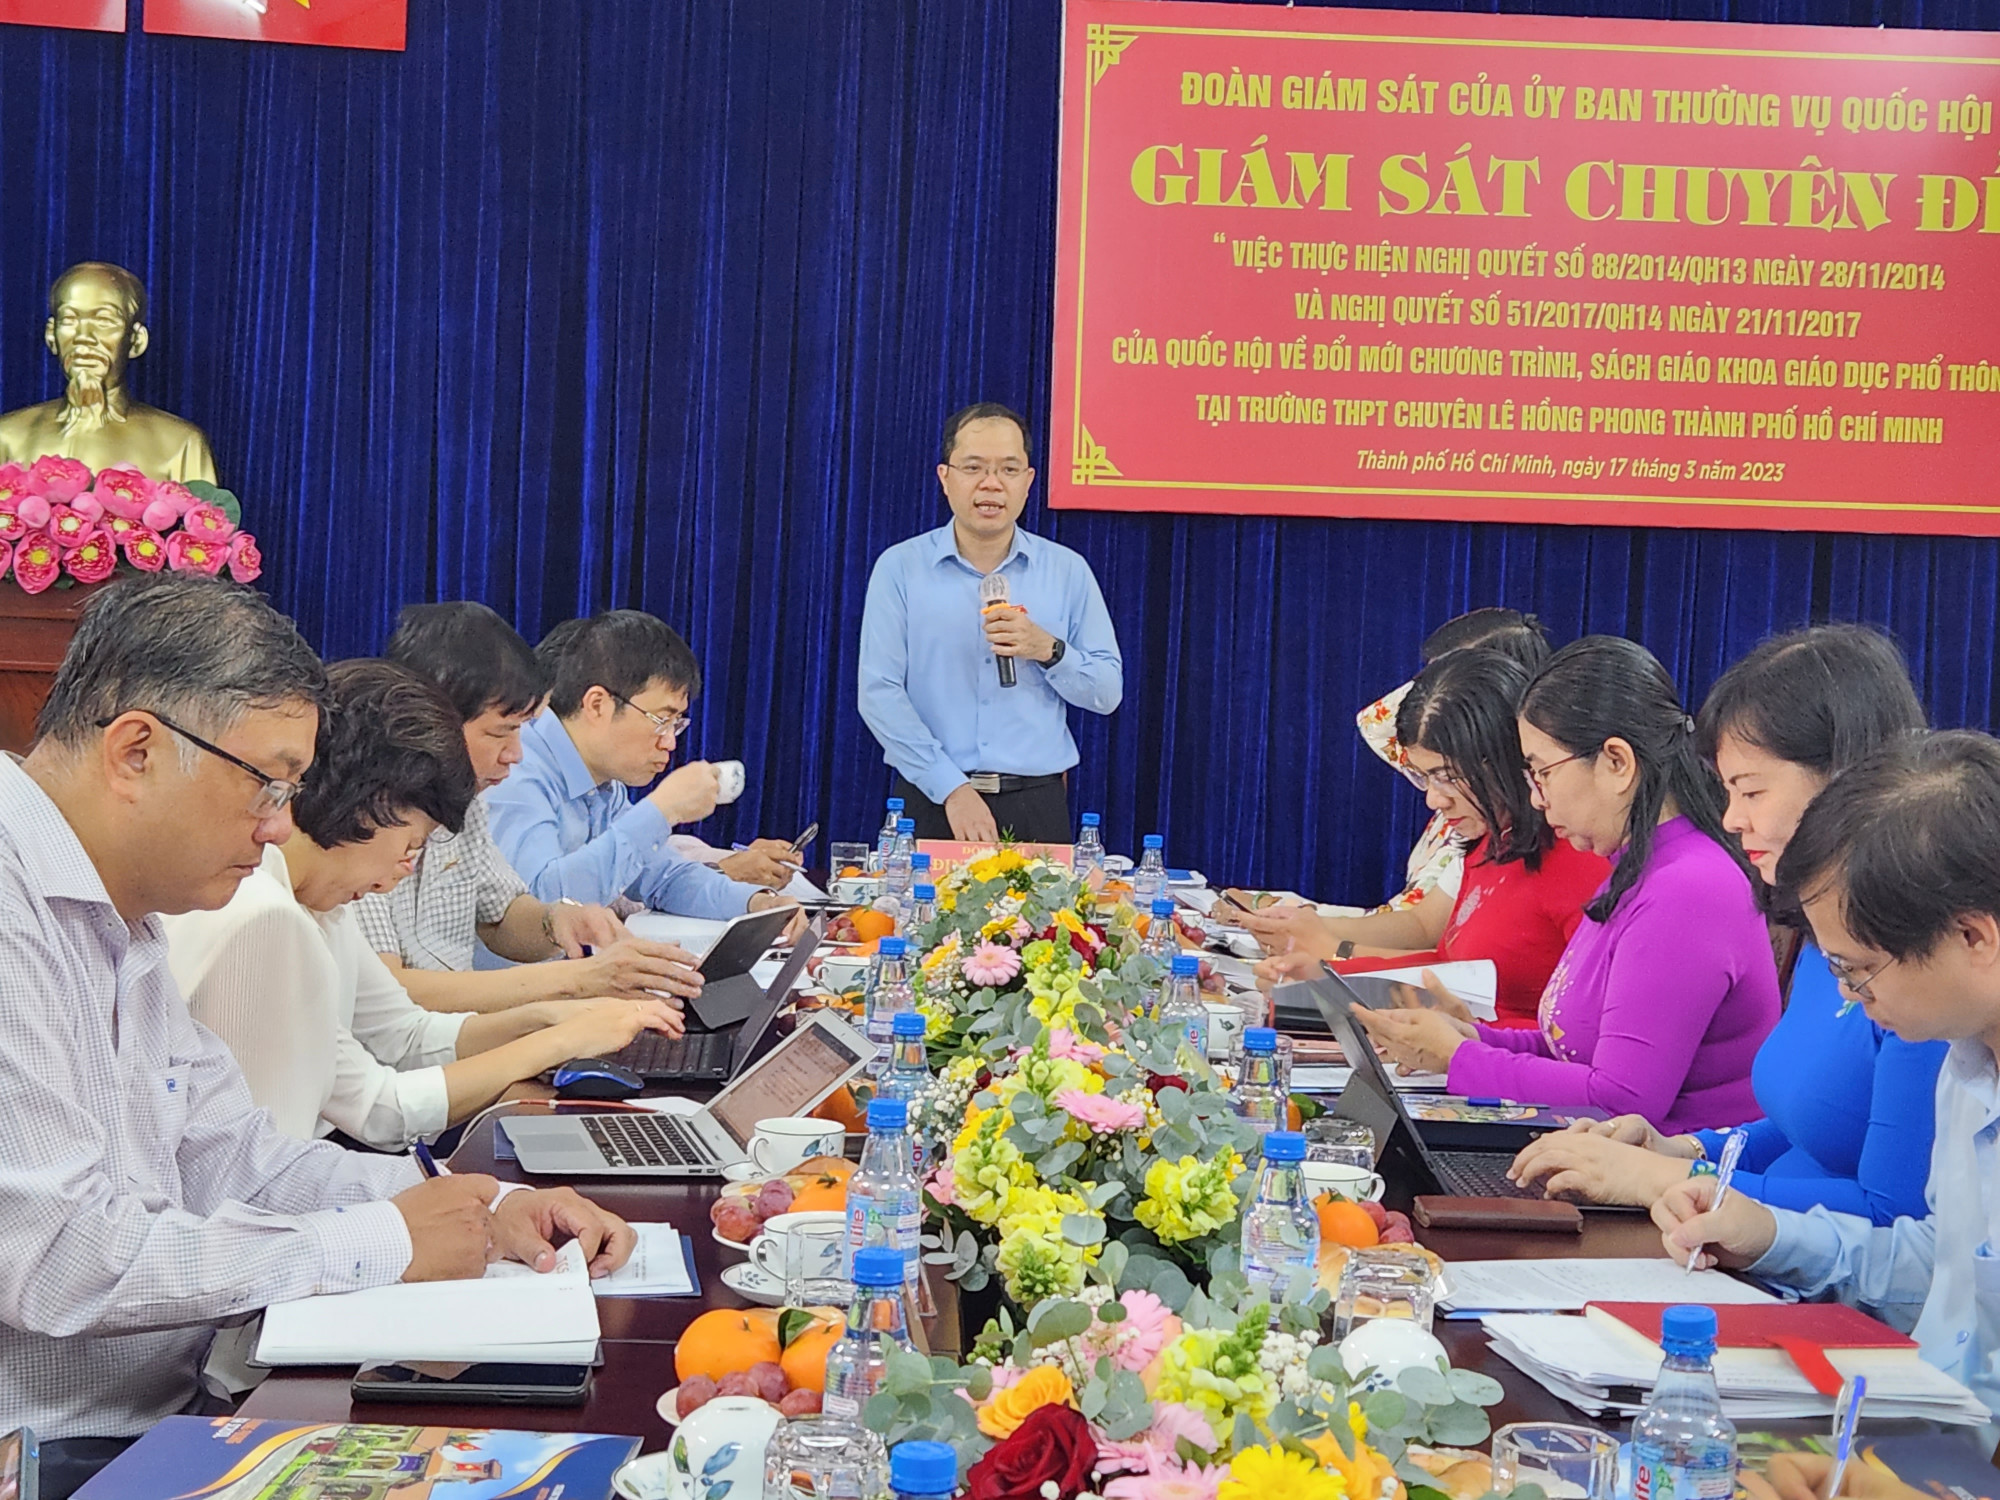 Đoàn giám sát của Uỷ ban Thường vụ Quốc hội làm việc tại Trường THPT chuyên Lê Hồng Phong